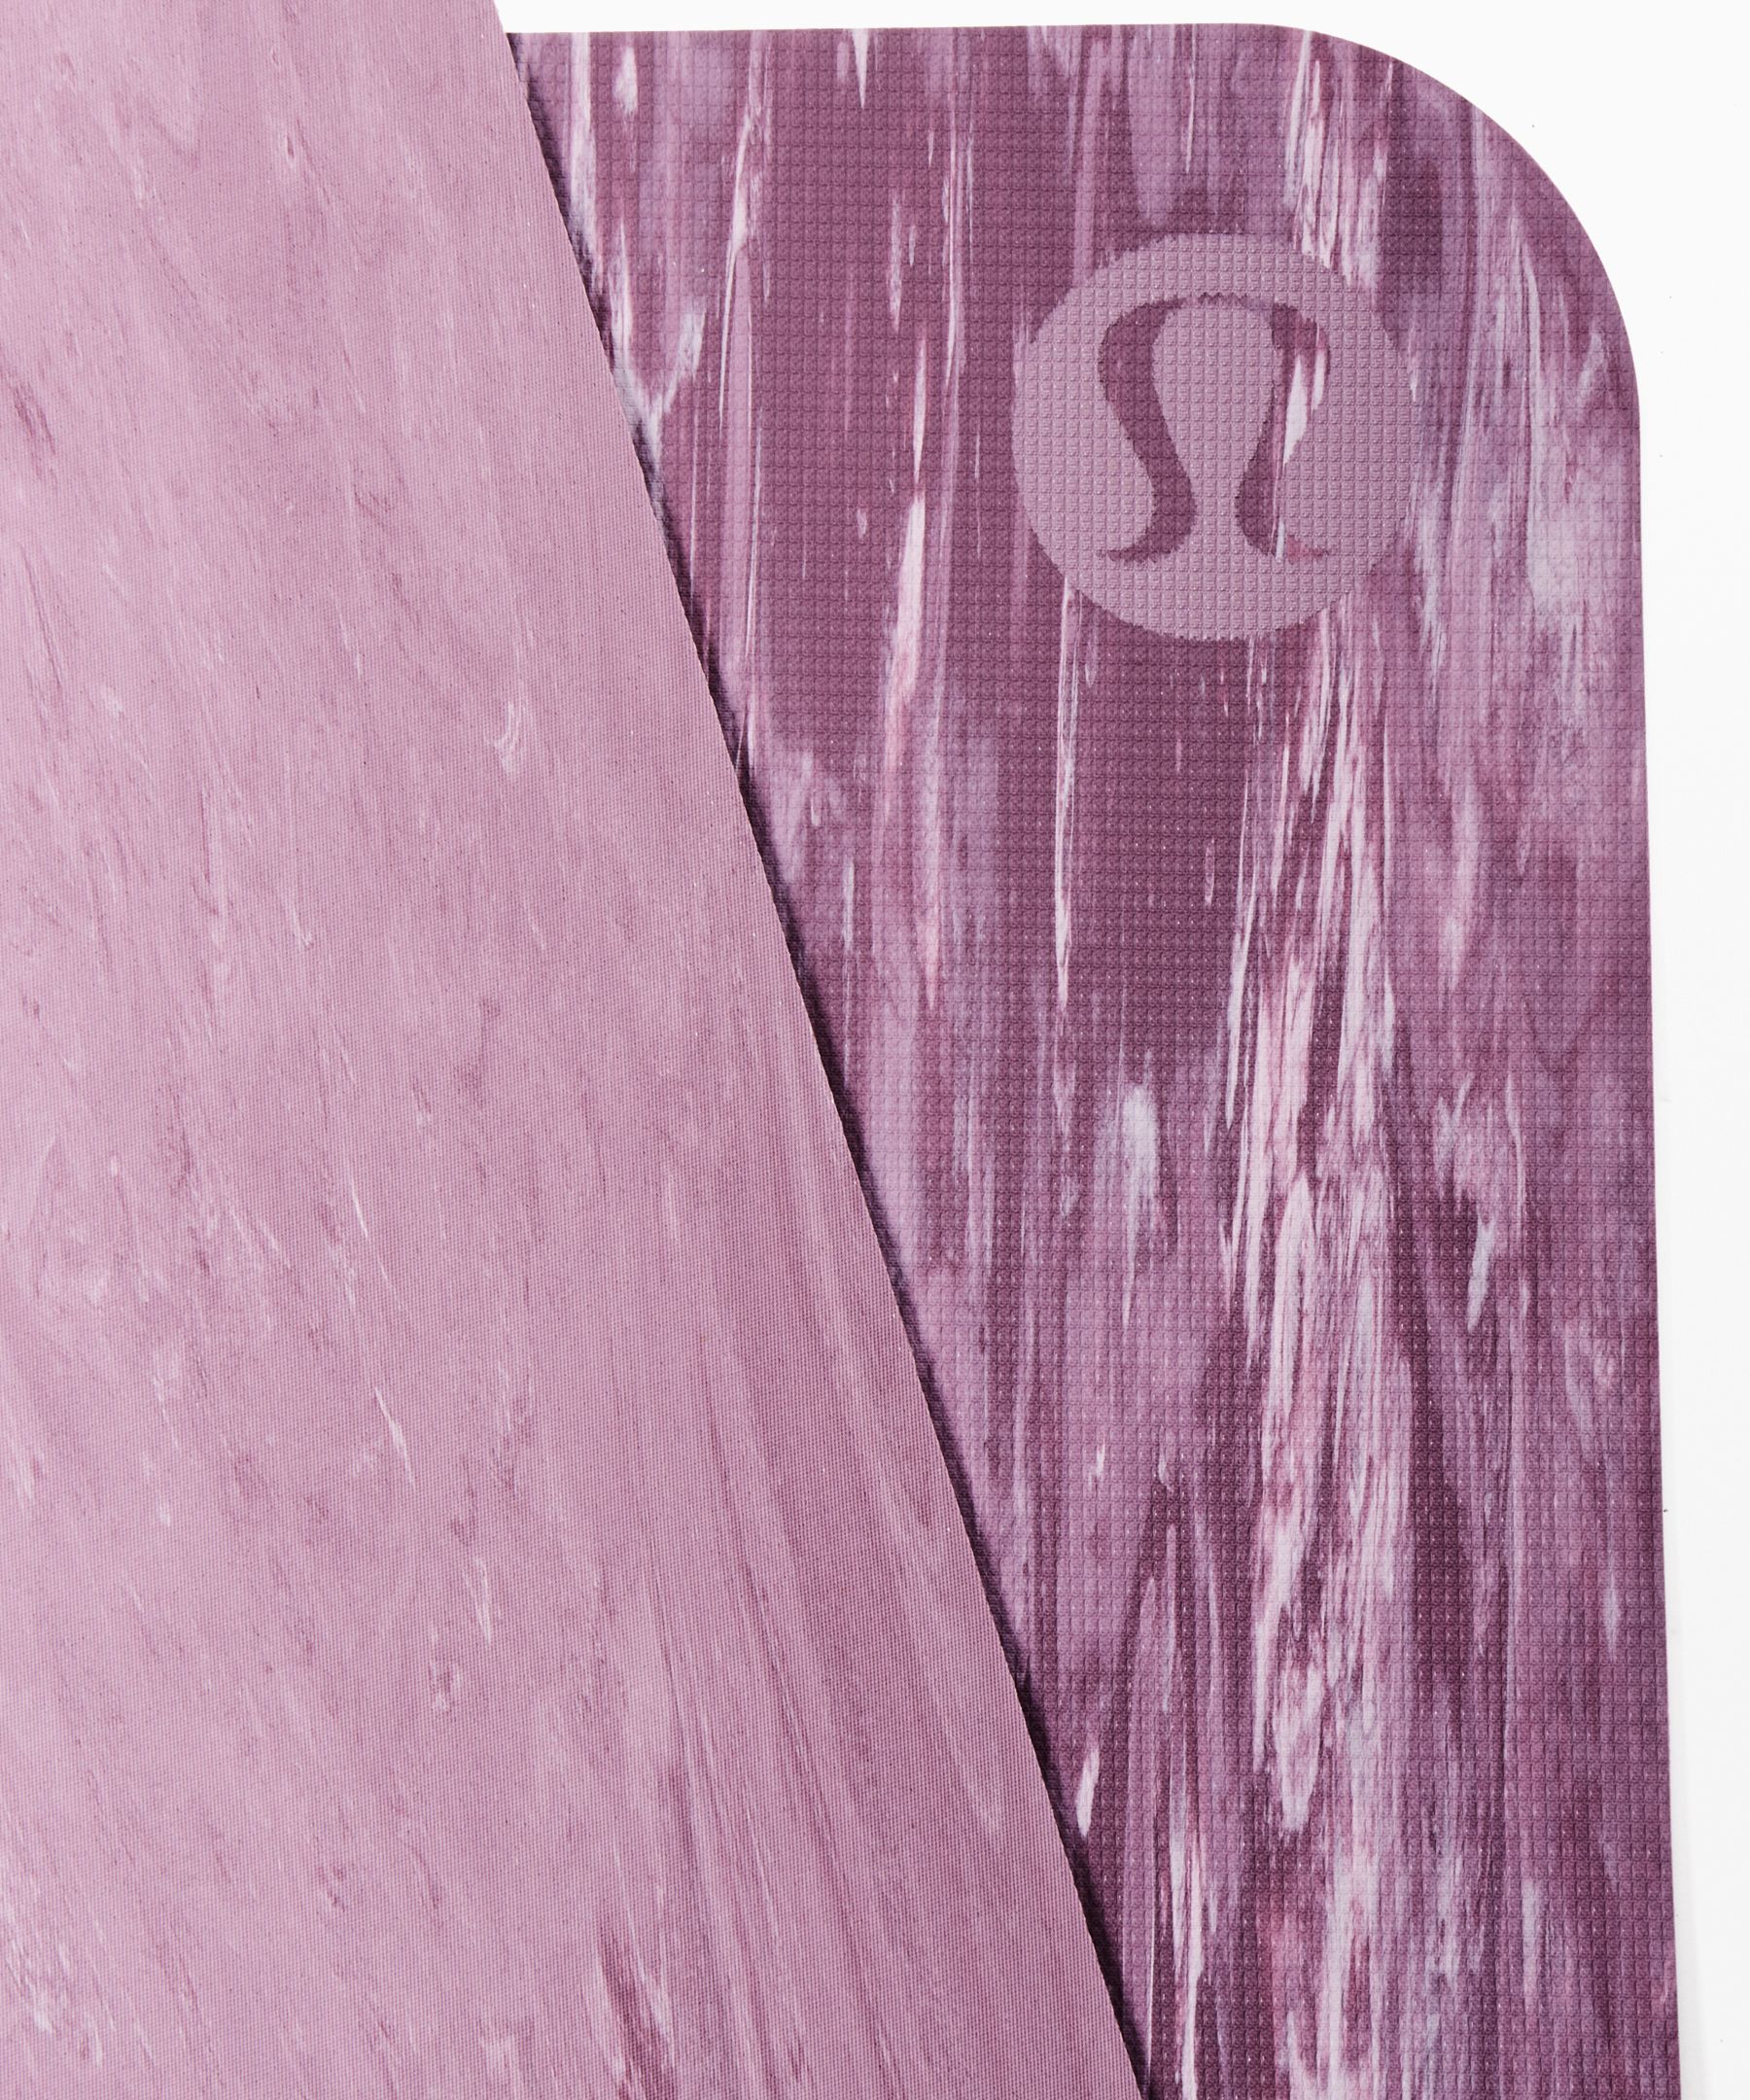 lululemon pink yoga mat